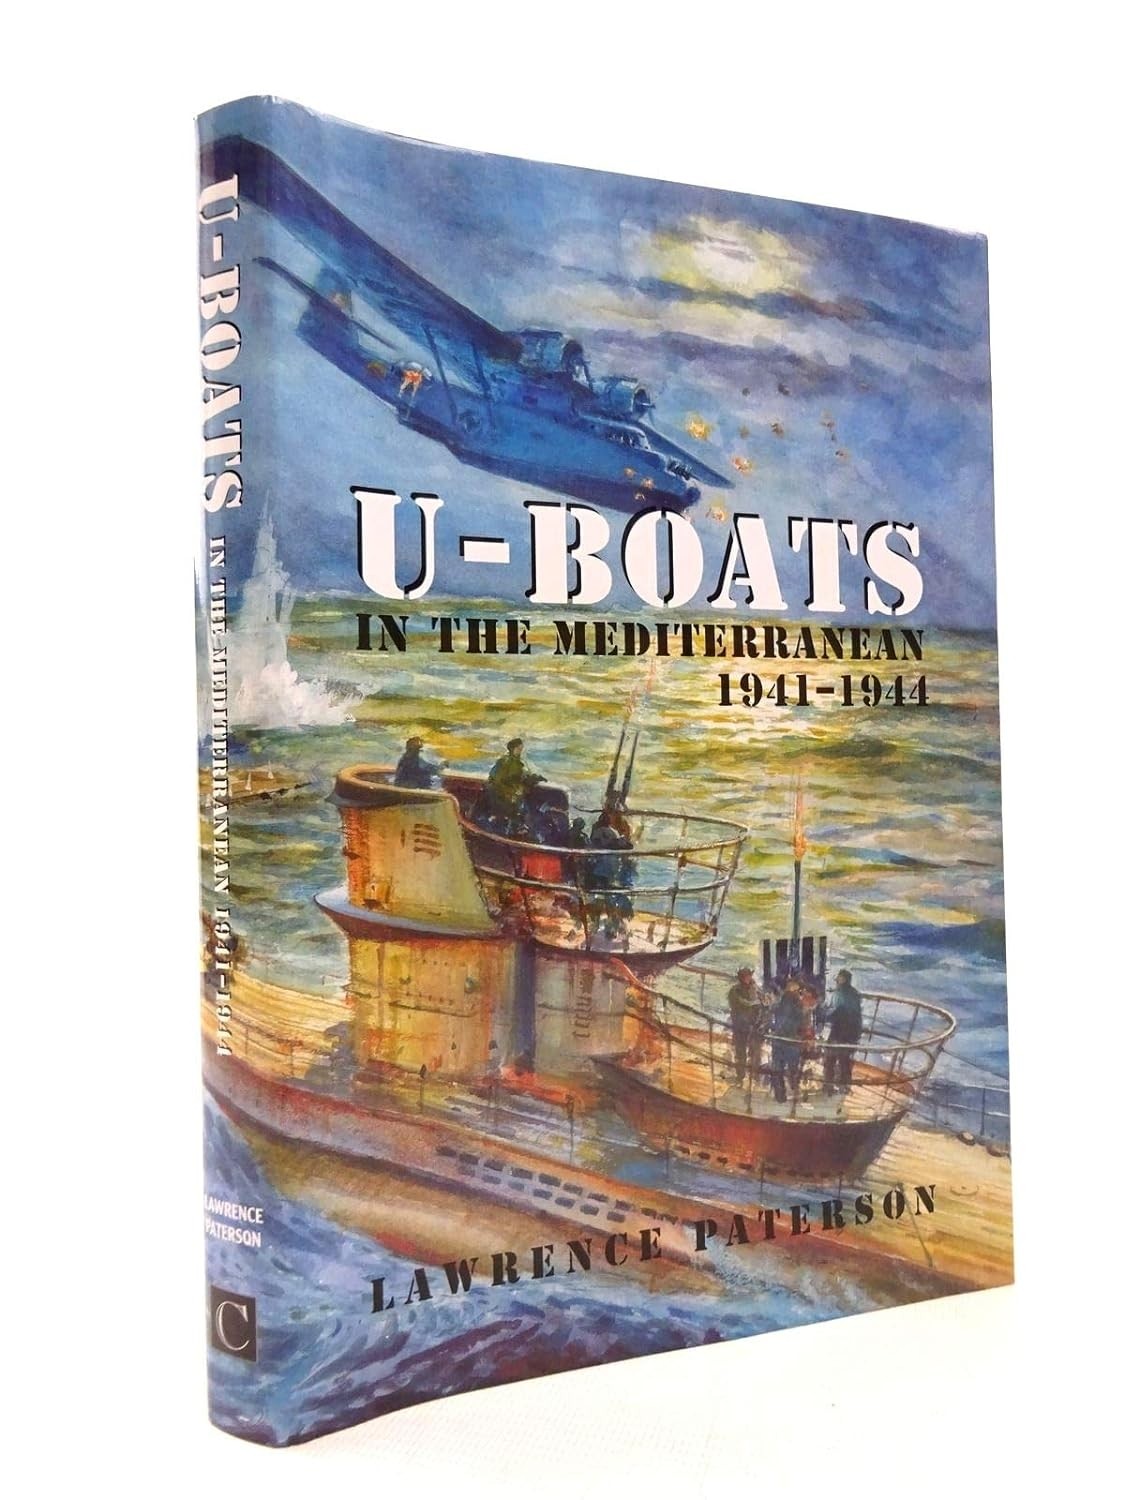 U-boats in the Mediterranean 1941-1944